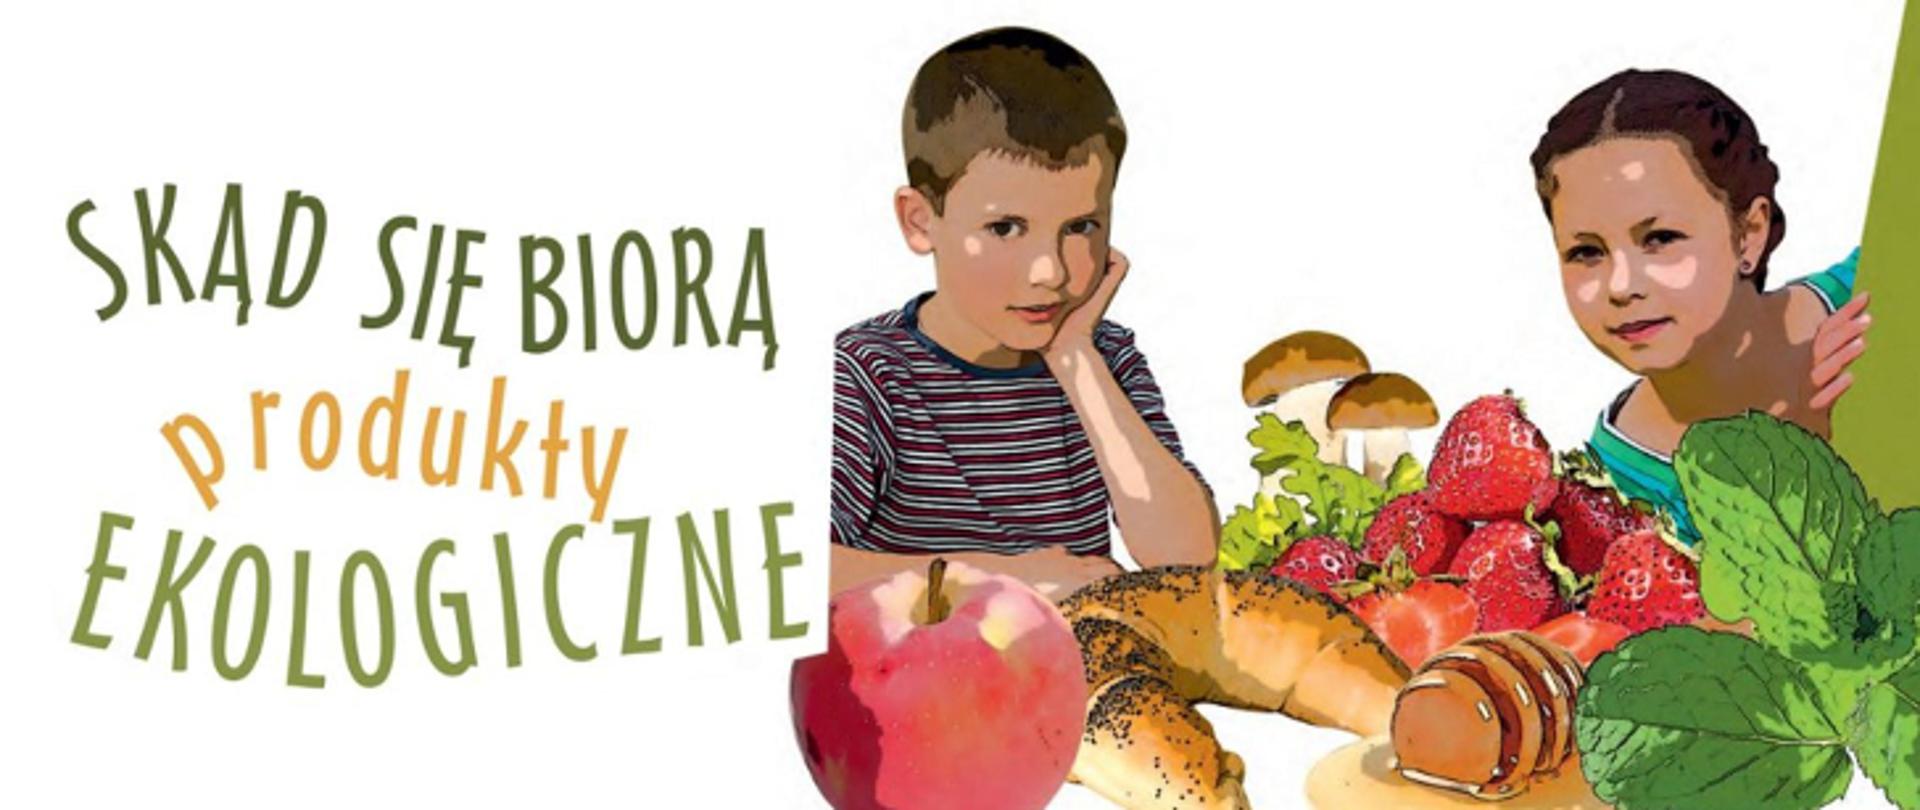 Logo z napisem Skąd się biorą produkty ekologiczne, obok jabłko, truskawki, grzyby, rogalik z makiem, chłopiec i dziewczynka